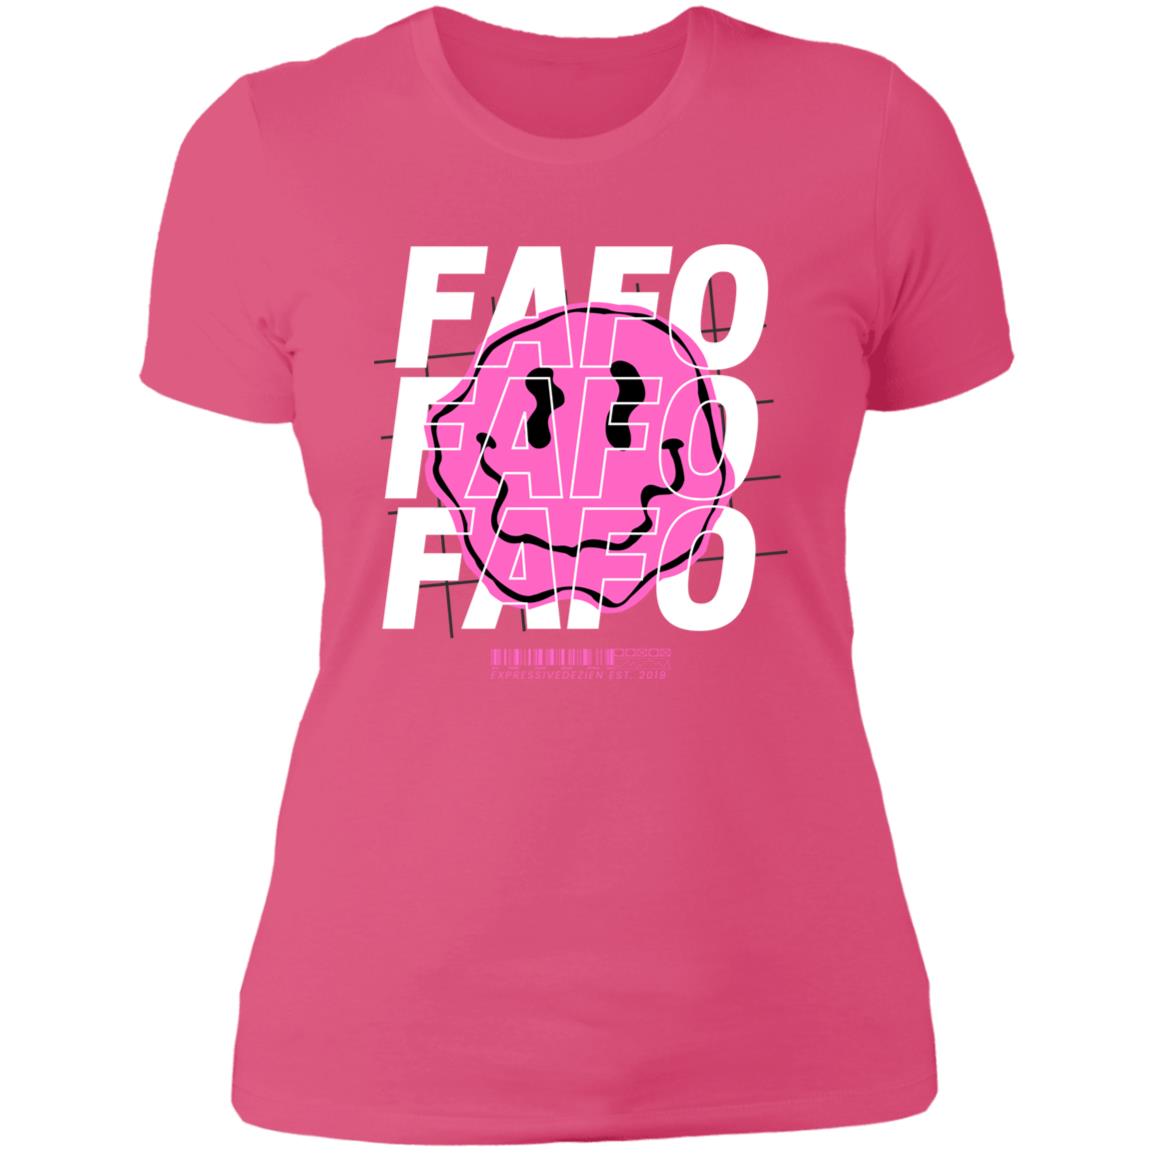 Pink White FAFO Smiley Face Positive T-Shirt - Ladies' Boyfriend Fit - Expressive DeZien 